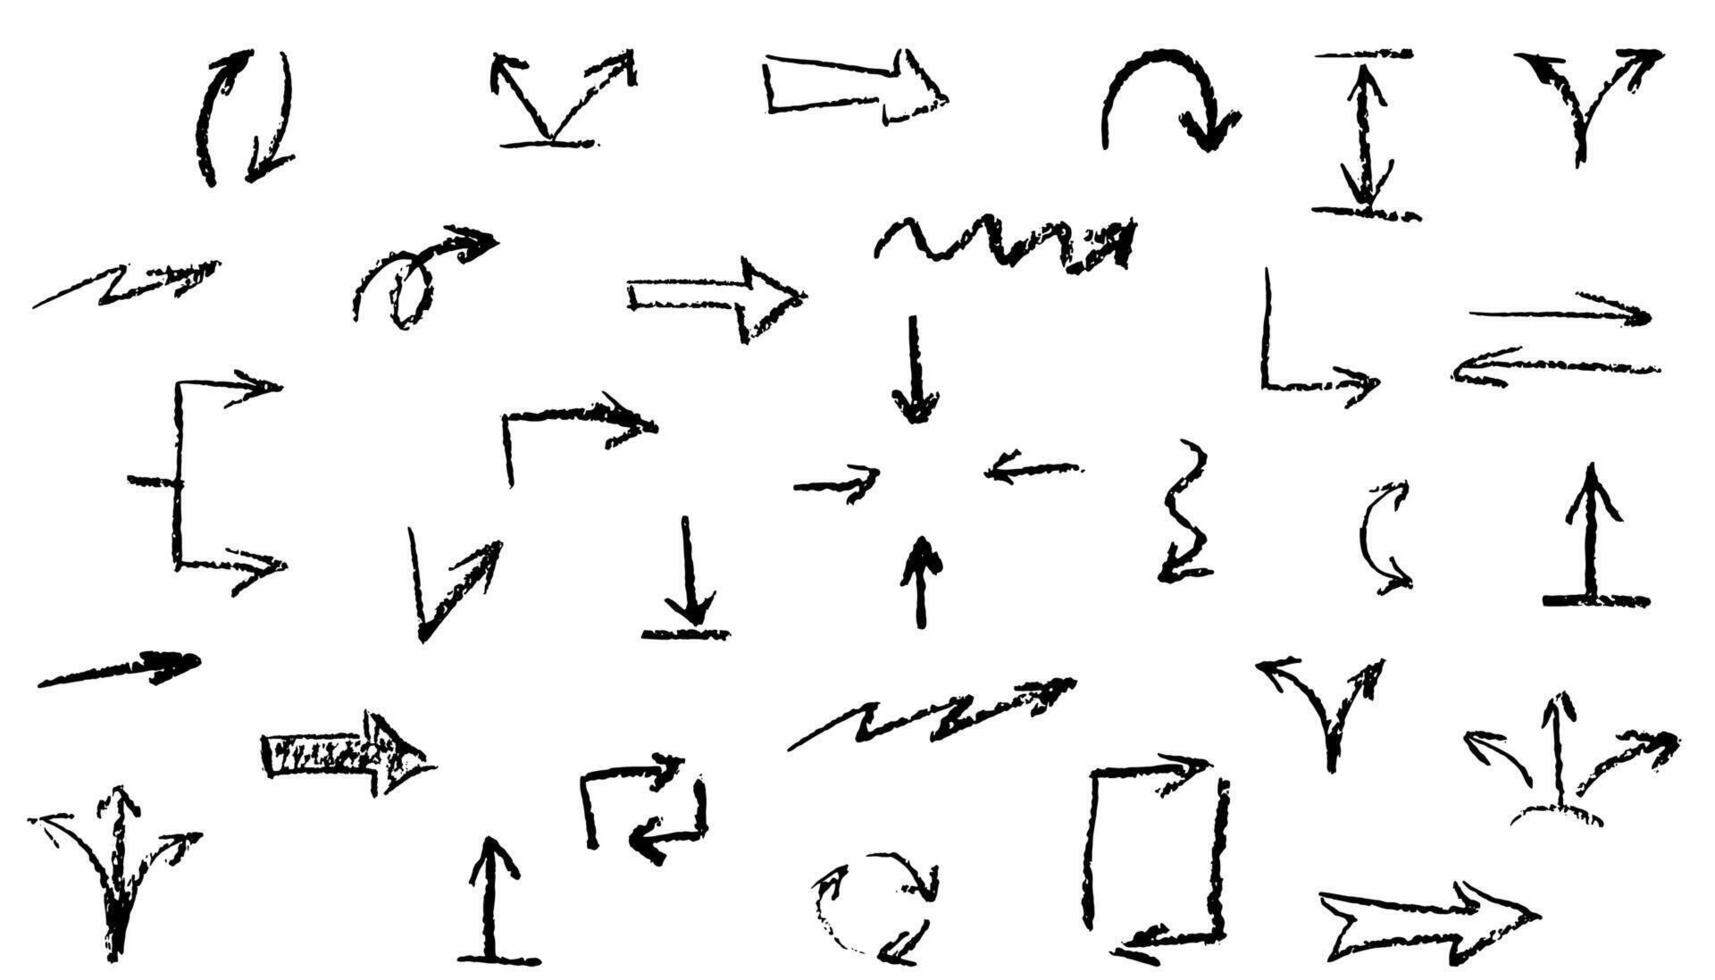 grupp av krita pilar. hand dragen svart träkol krita symboler för hand dragen diagram. vektor klotter markör teckning